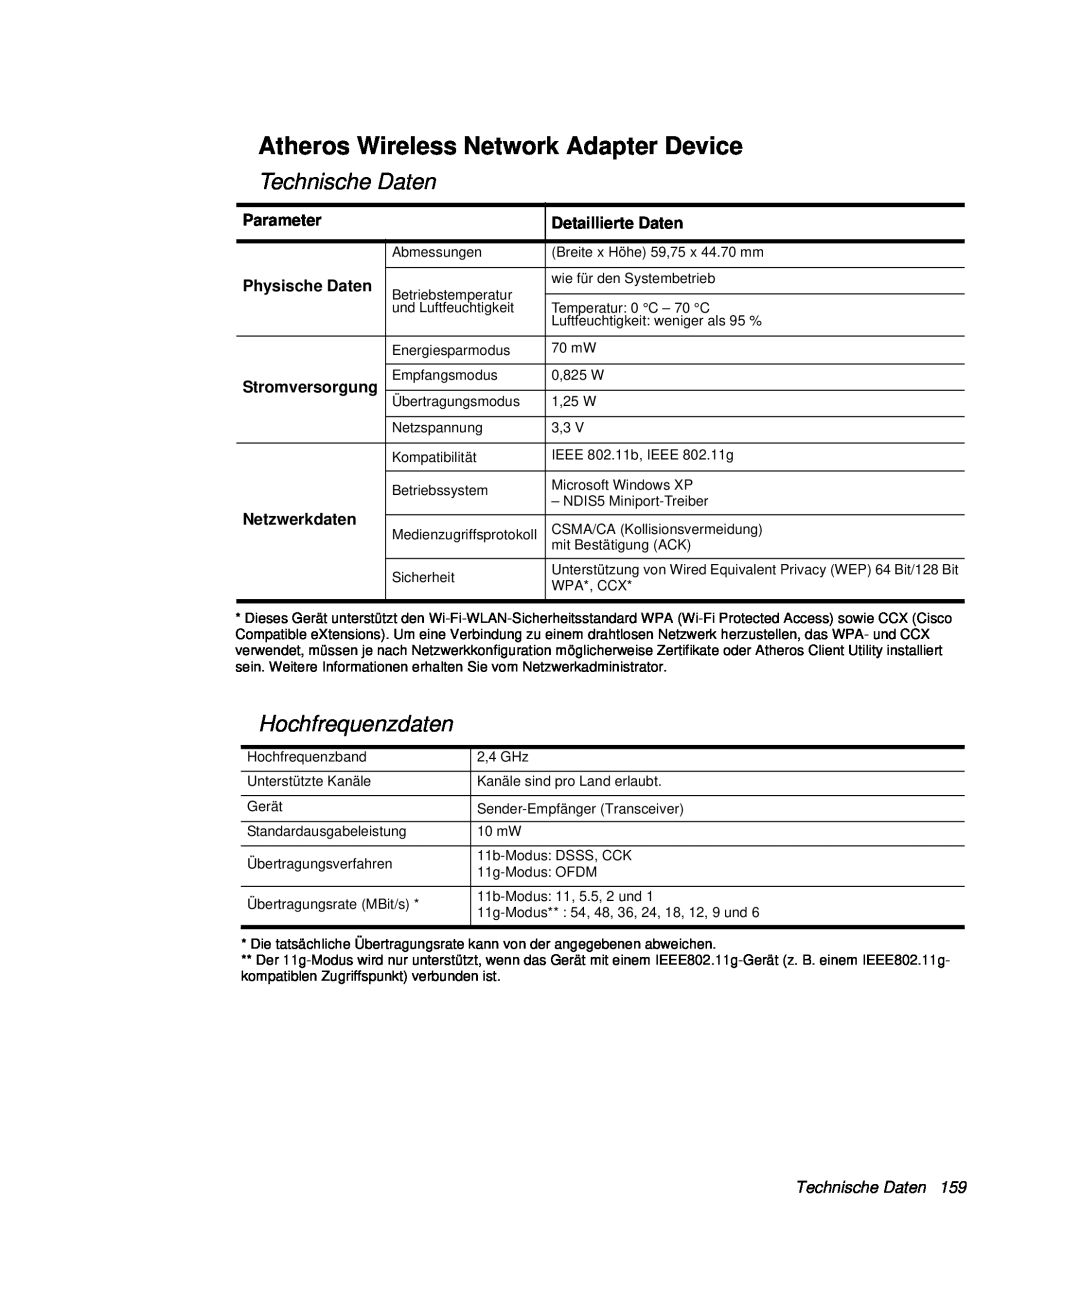 Samsung NP-R40FY08/SEG manual Atheros Wireless Network Adapter Device, Technische Daten, Hochfrequenzdaten, Parameter 